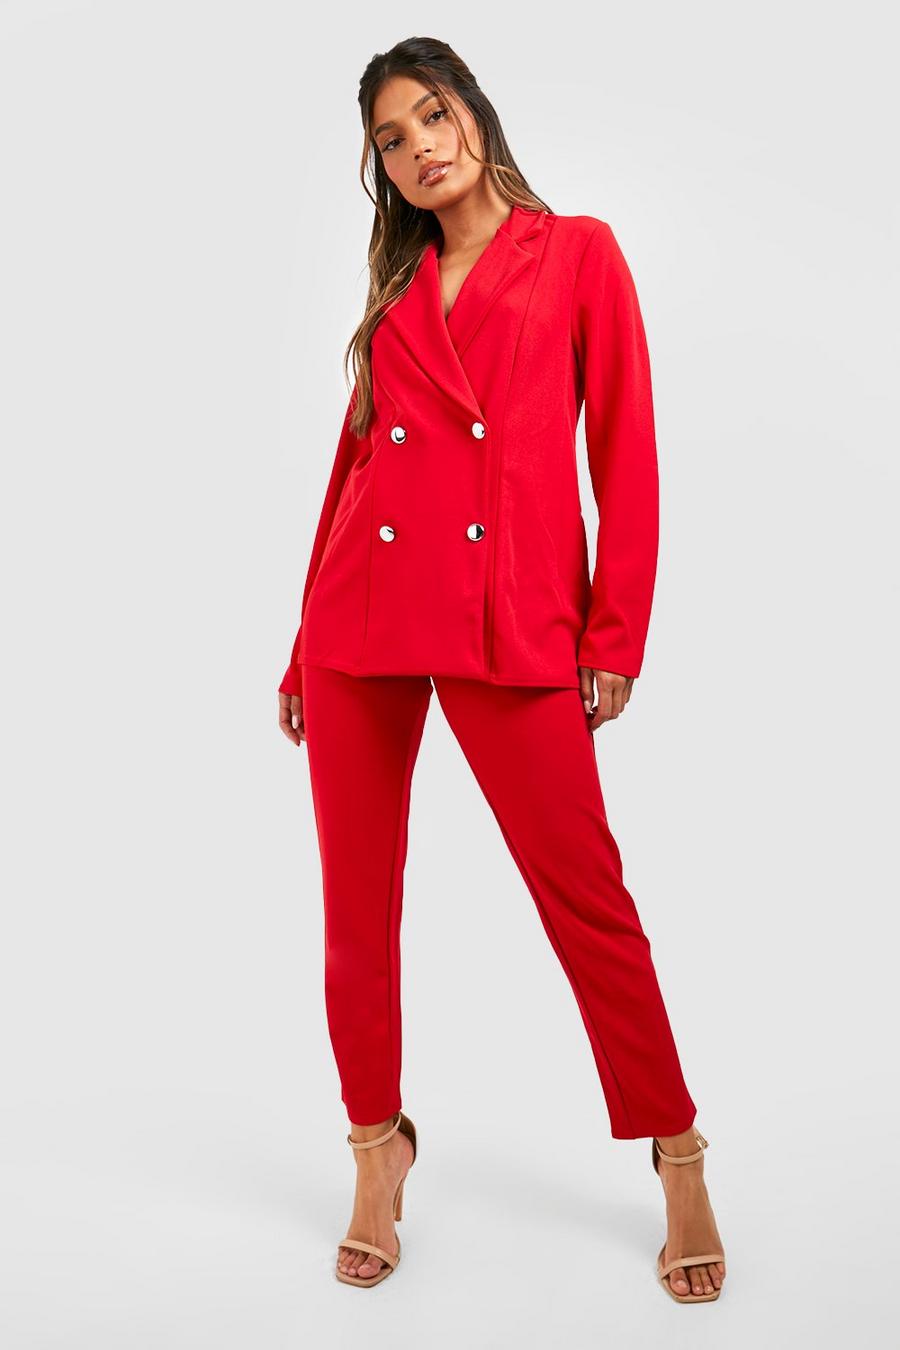 אדום rojo סט חליפה בלייזר עם סגירה בהצלבה ומכנסיים